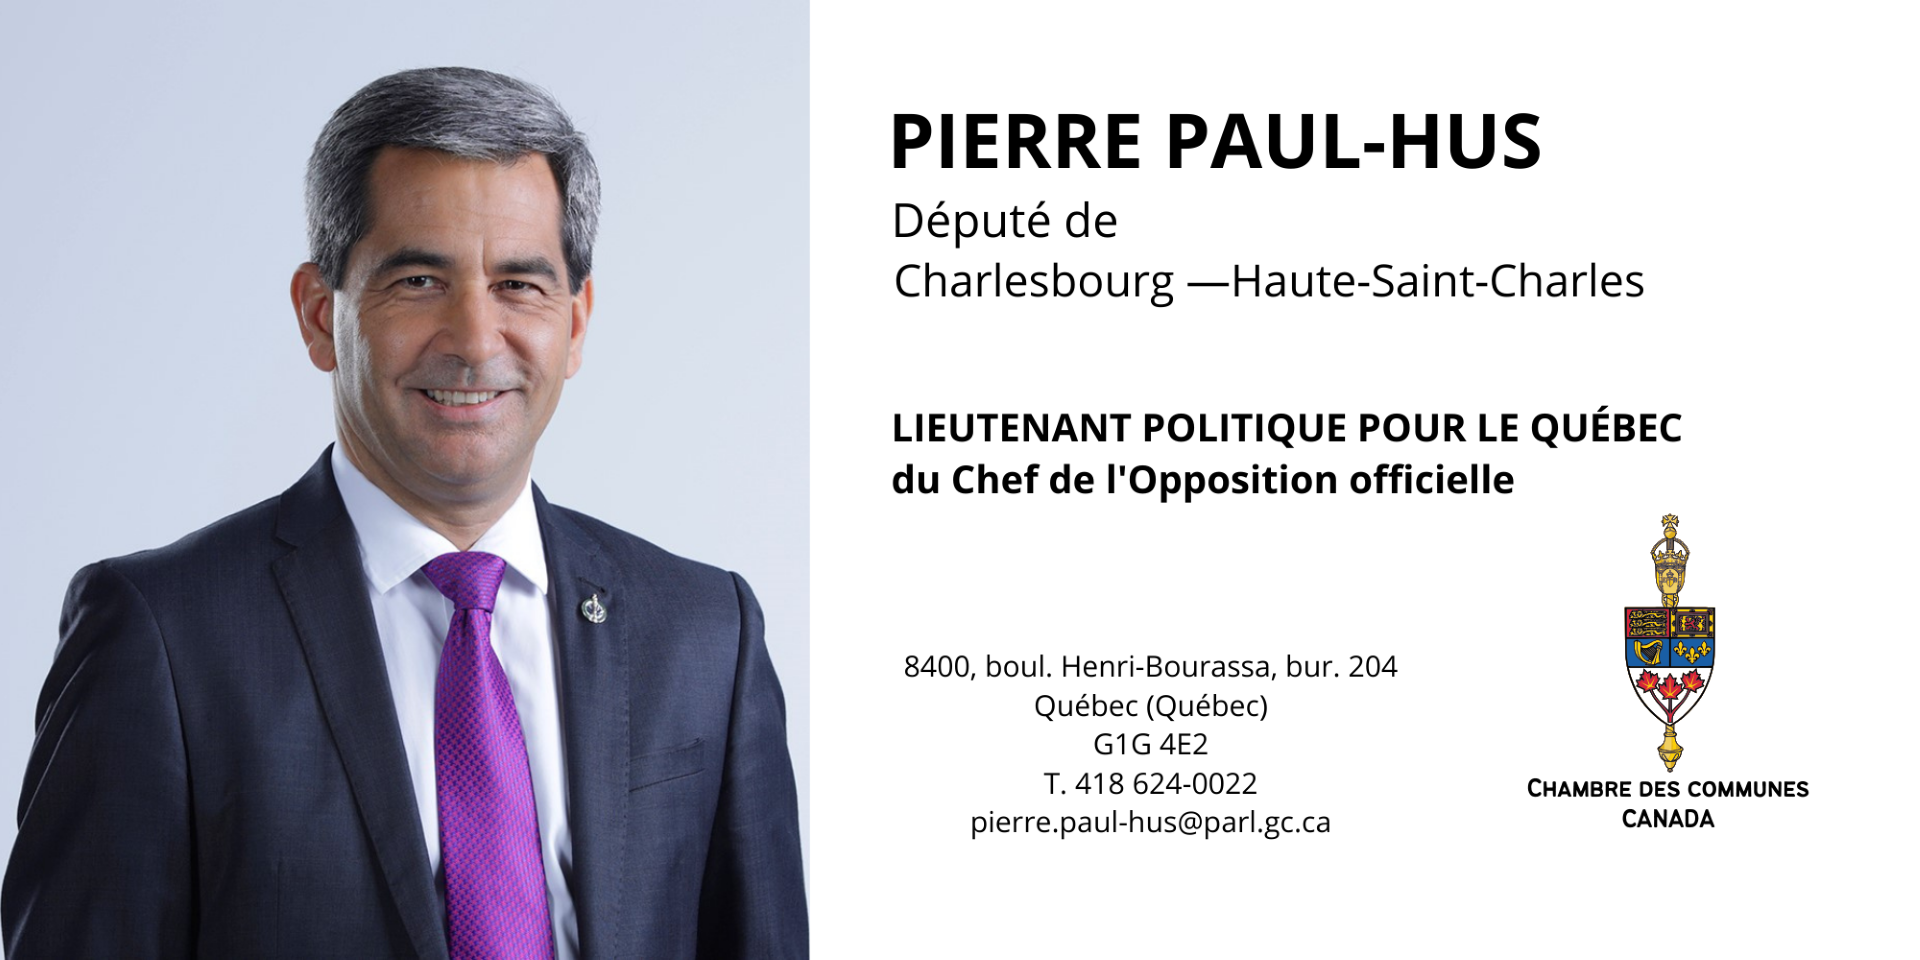 Pierre Paul-Hus, Député fédéral de Charlesbourg-Haute-St-Charles